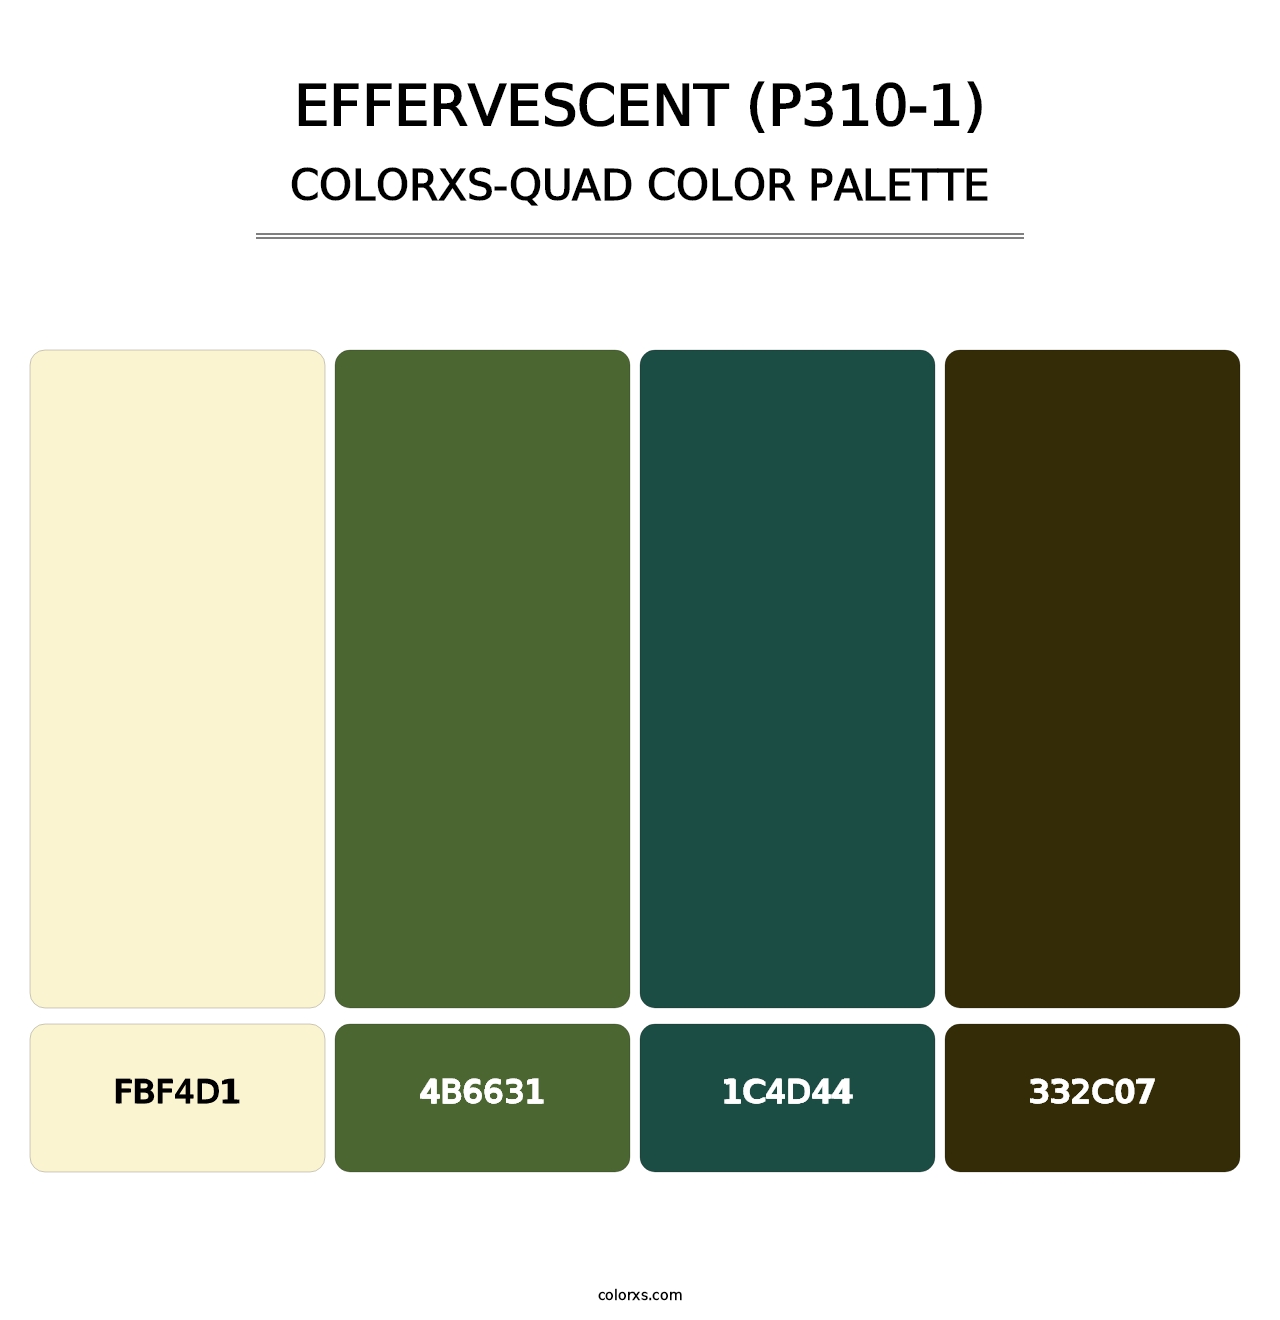 Effervescent (P310-1) - Colorxs Quad Palette